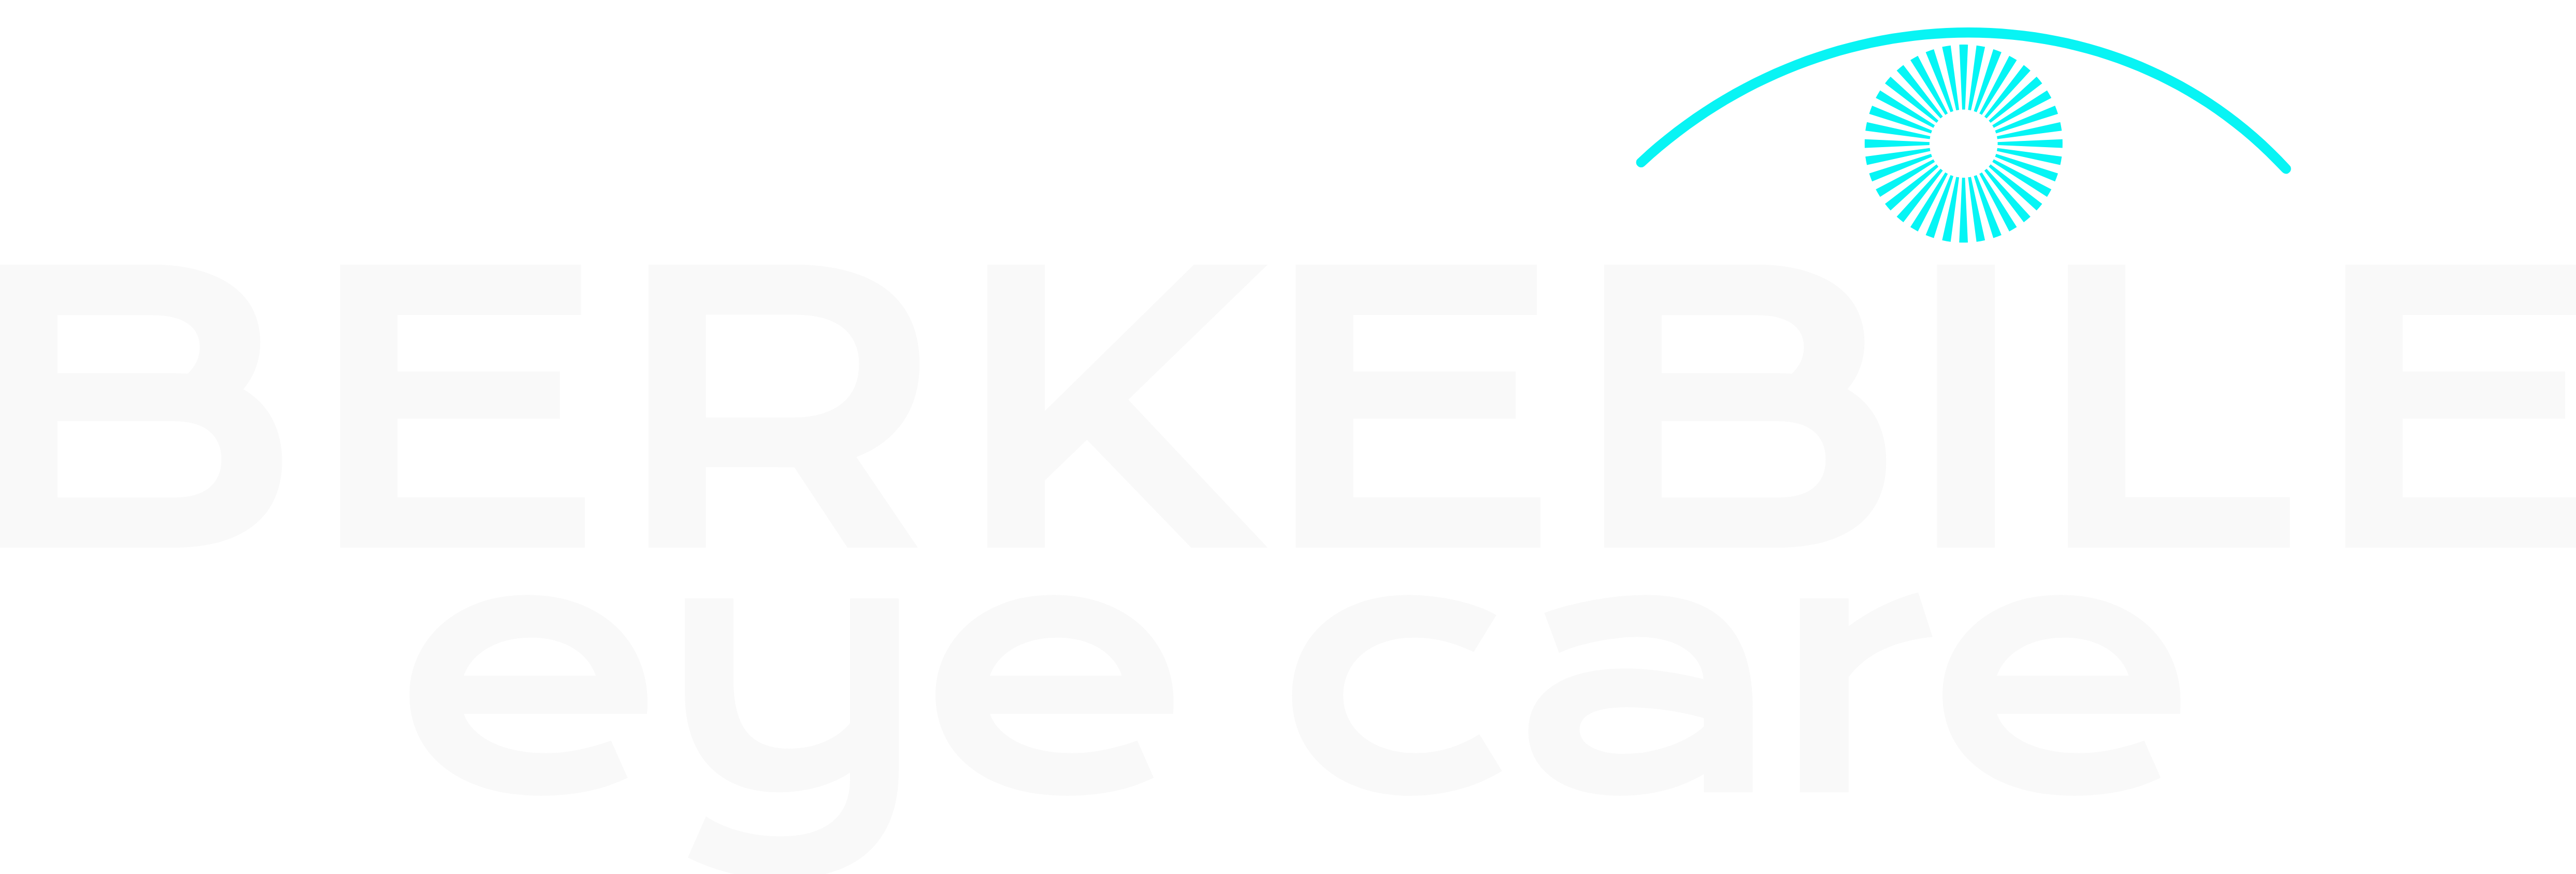 Berkebile Eye Care Logo